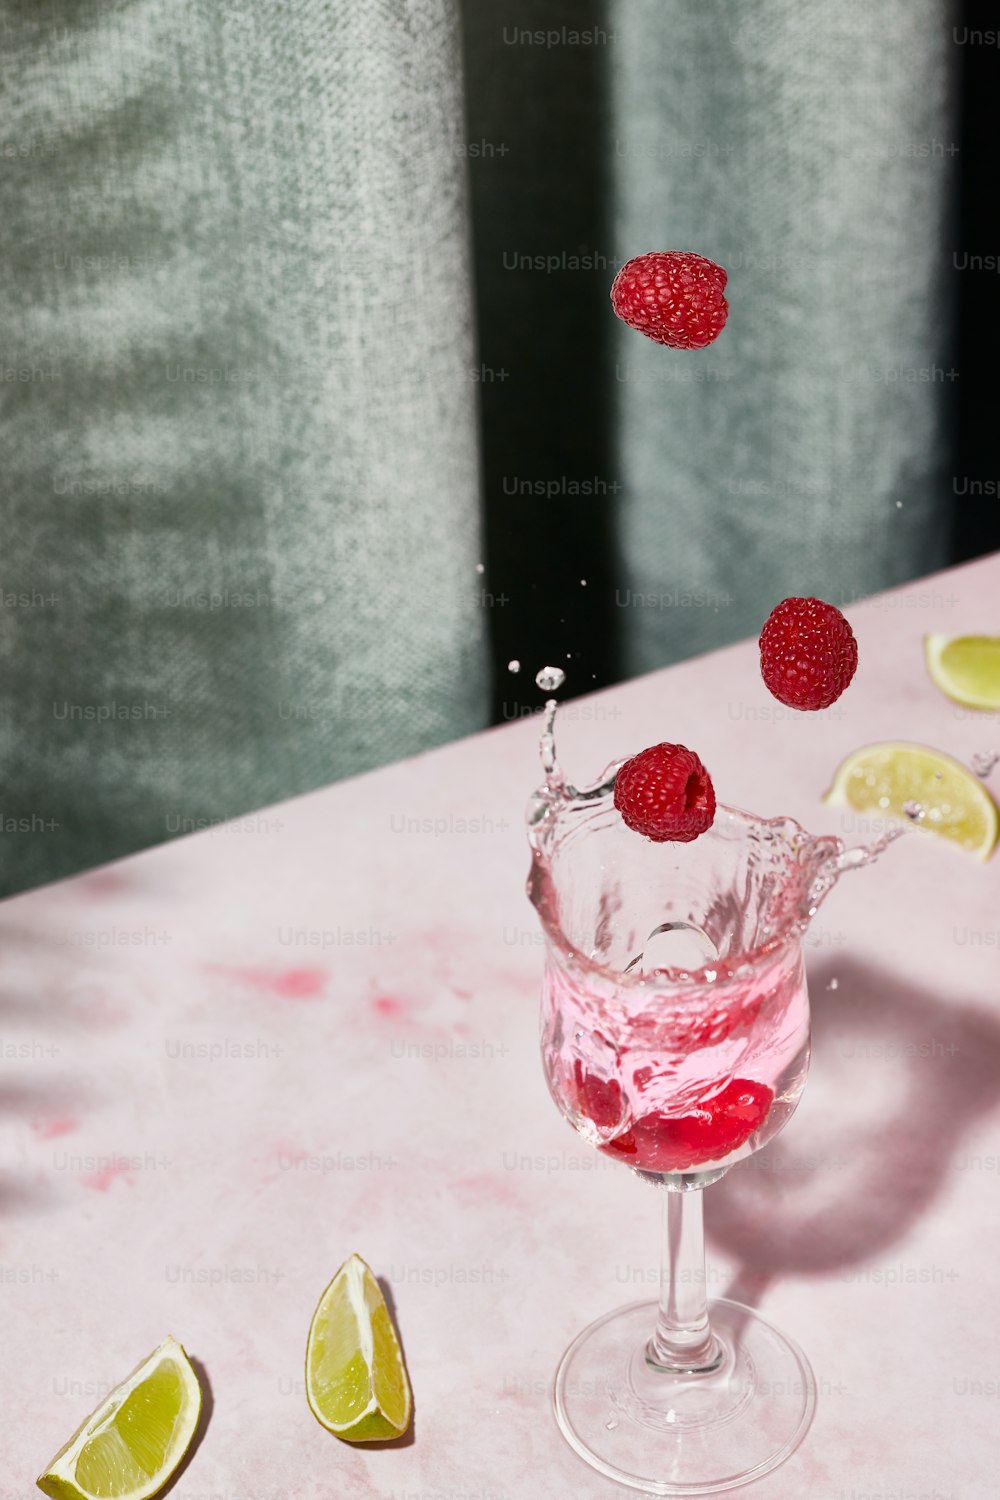 ein Glas gefüllt mit einer rosa Flüssigkeit und gekrönt mit Himbeeren